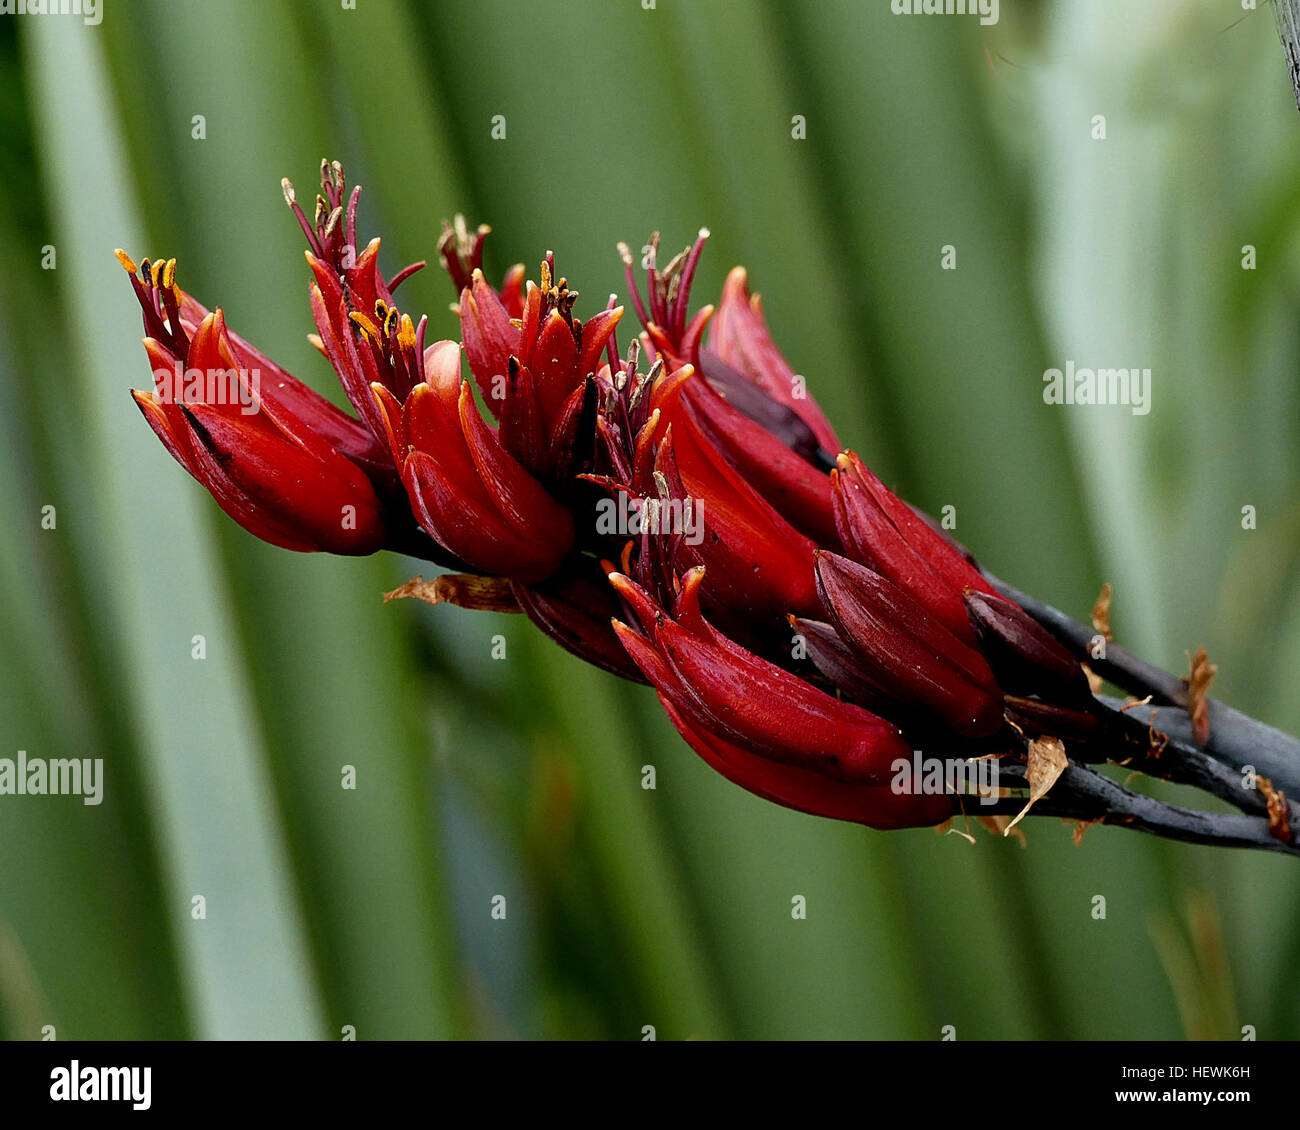 Le lin de Nouvelle-Zélande est l'un des pays les plus caractéristiques des plantes indigènes. Elle a des feuilles en forme d'épée, 1 à 3 mètres de long qui se développent en éventail. Au printemps, les oiseaux - particulièrement tūī - troupeau de se nourrir du nectar de ses fleurs en forme de tube, qui fleurissent sur les tiges jusqu'à 4,5 mètres de long. En transportant le pollen de plante en plante, les oiseaux de l'aide pour produire des graines de lin dans de longues gousses. Espèce de lin Le lin de la Nouvelle-Zélande n'est pas un vrai comme le lin Le lin Le lin (Linum usitatissimum), mais liés à la lis du jour. Il appartient à la famille et l'Hemerocallidaceae Phormium genre. Elle pousse naturellement qu'en Nouvelle-Zélande et Banque D'Images